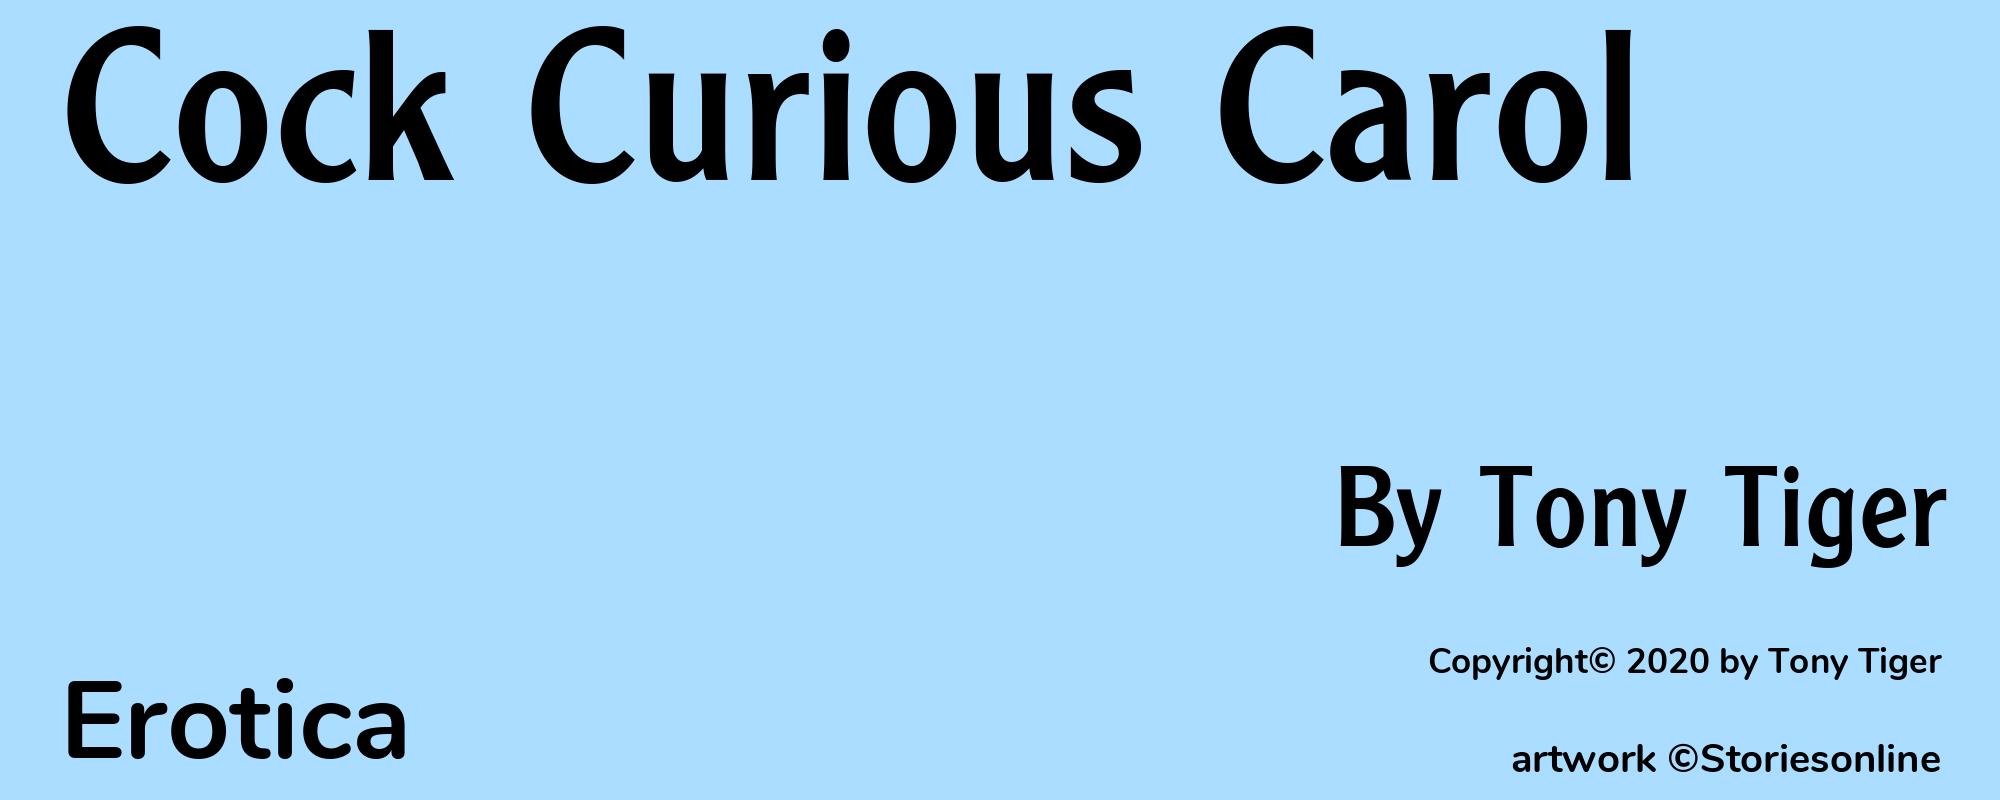 Cock Curious Carol - Cover